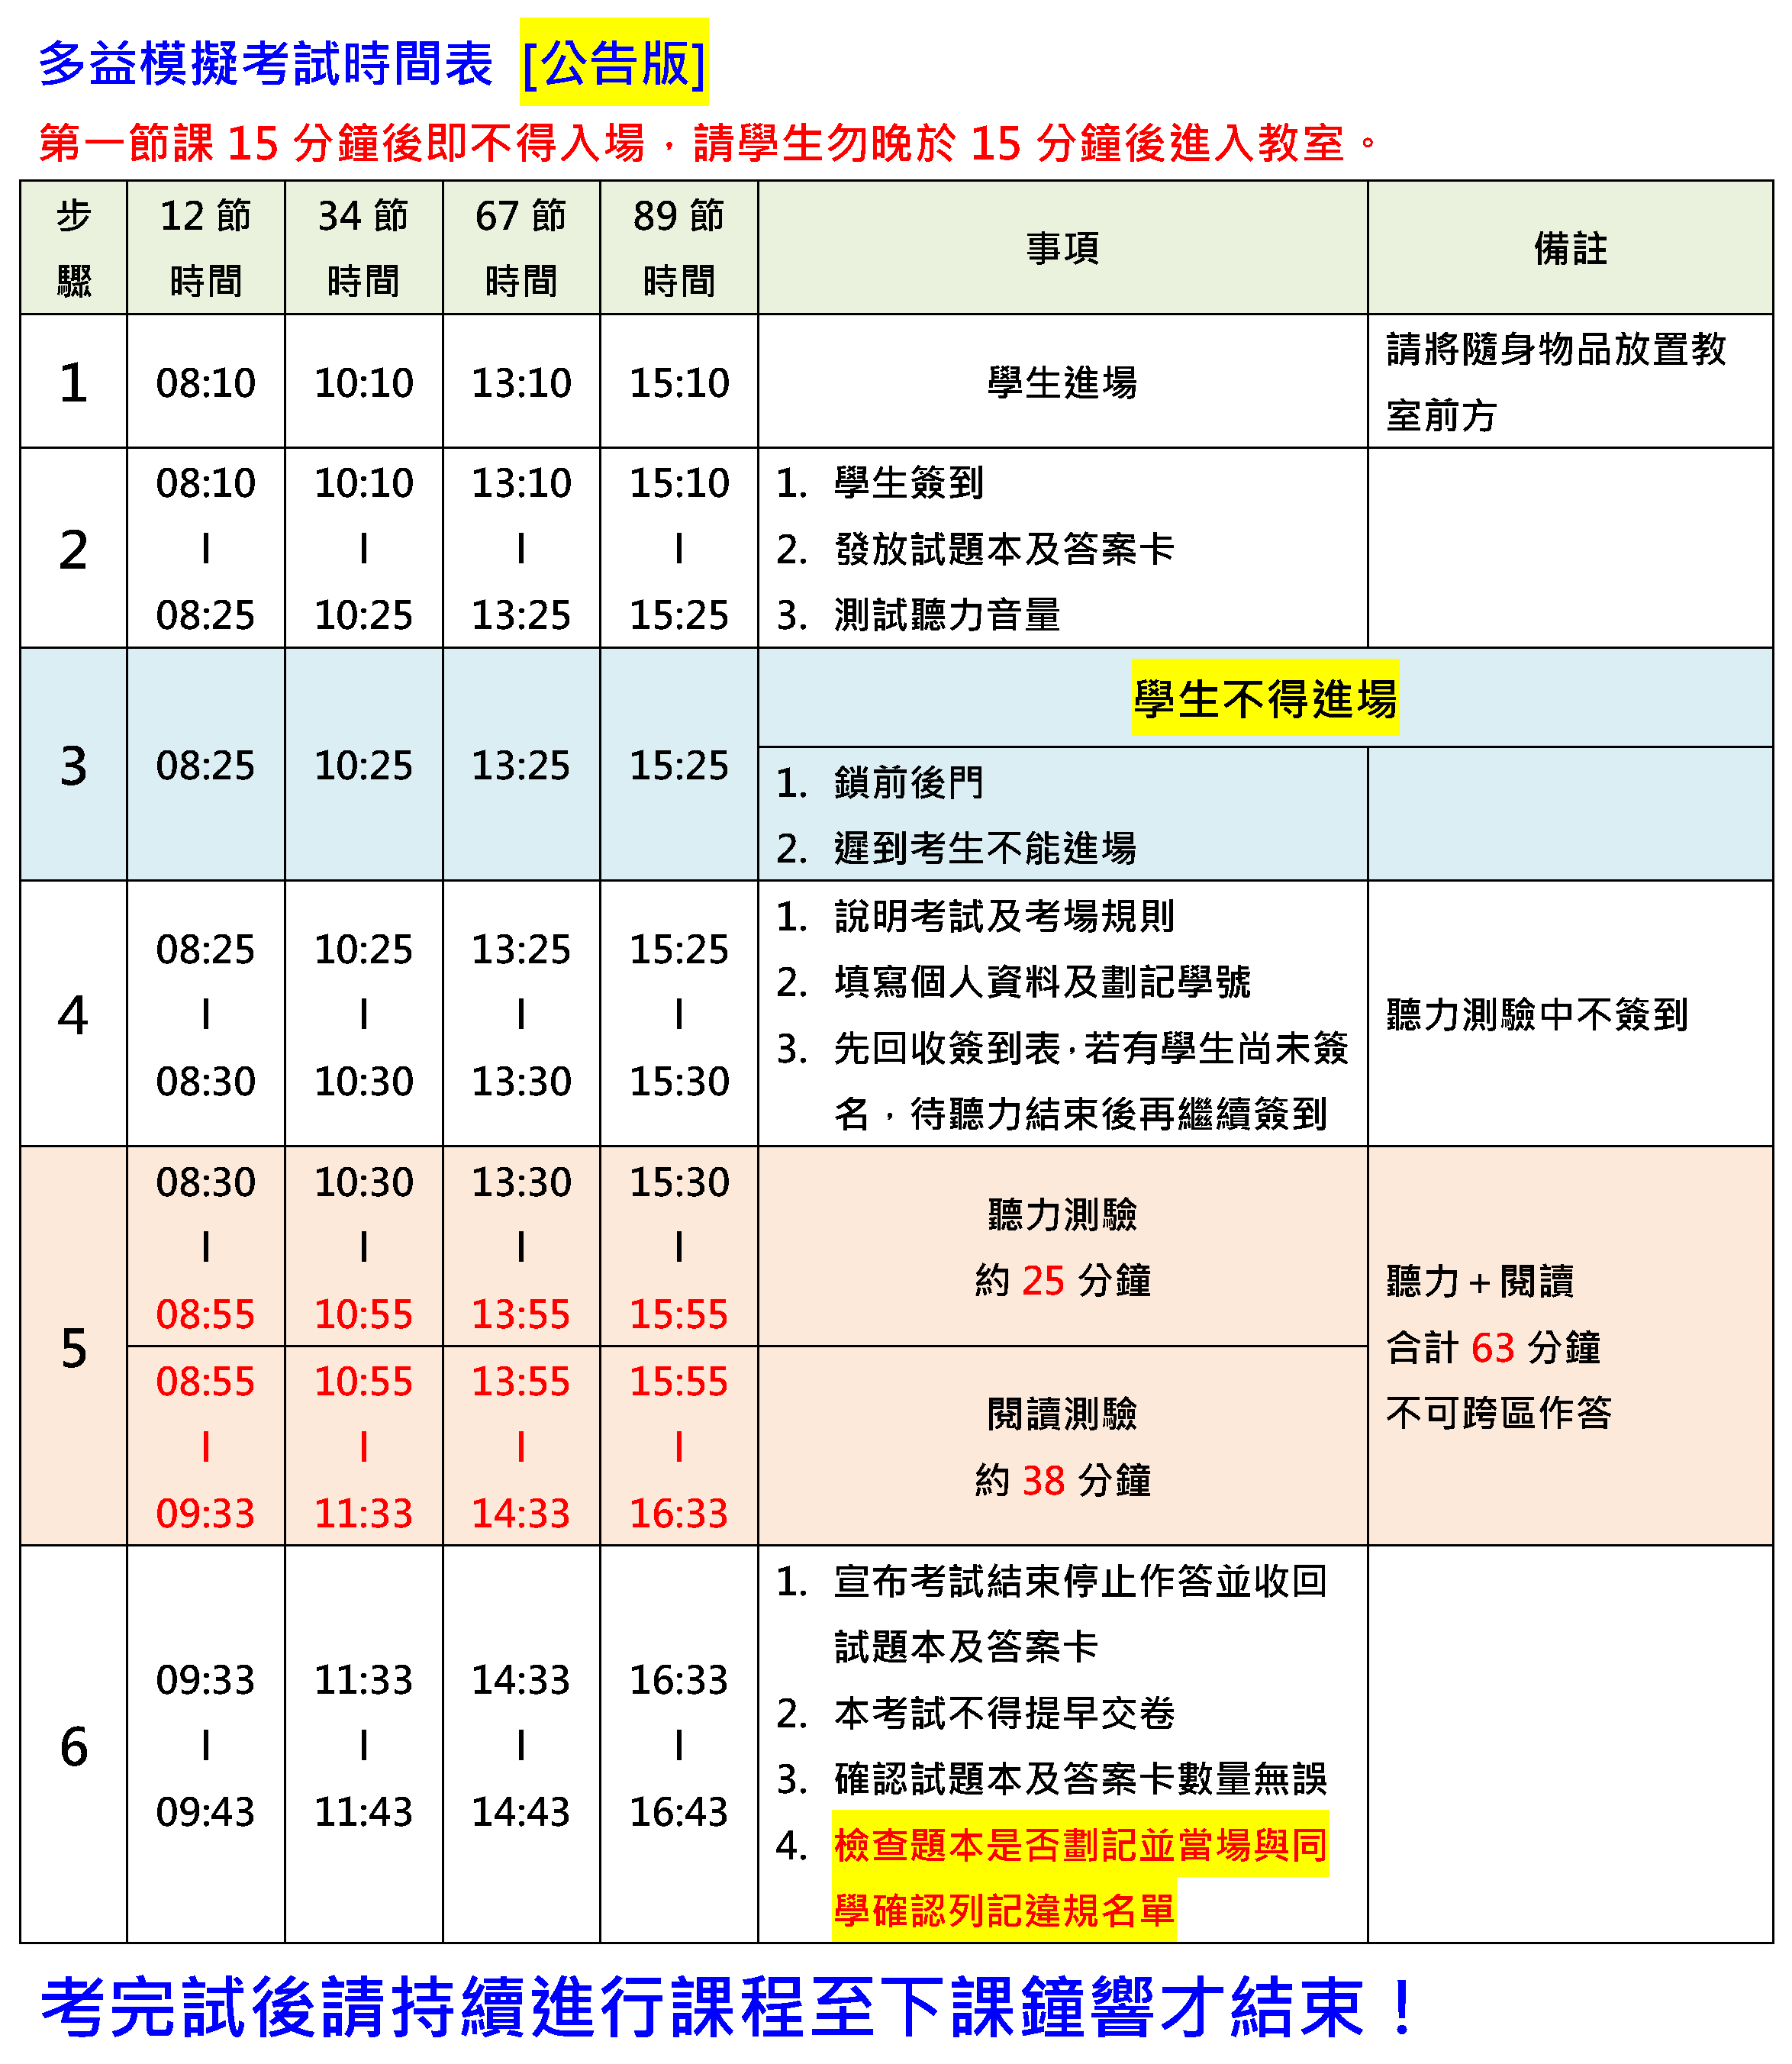 112-1 多益模擬考試時間表(公告版)